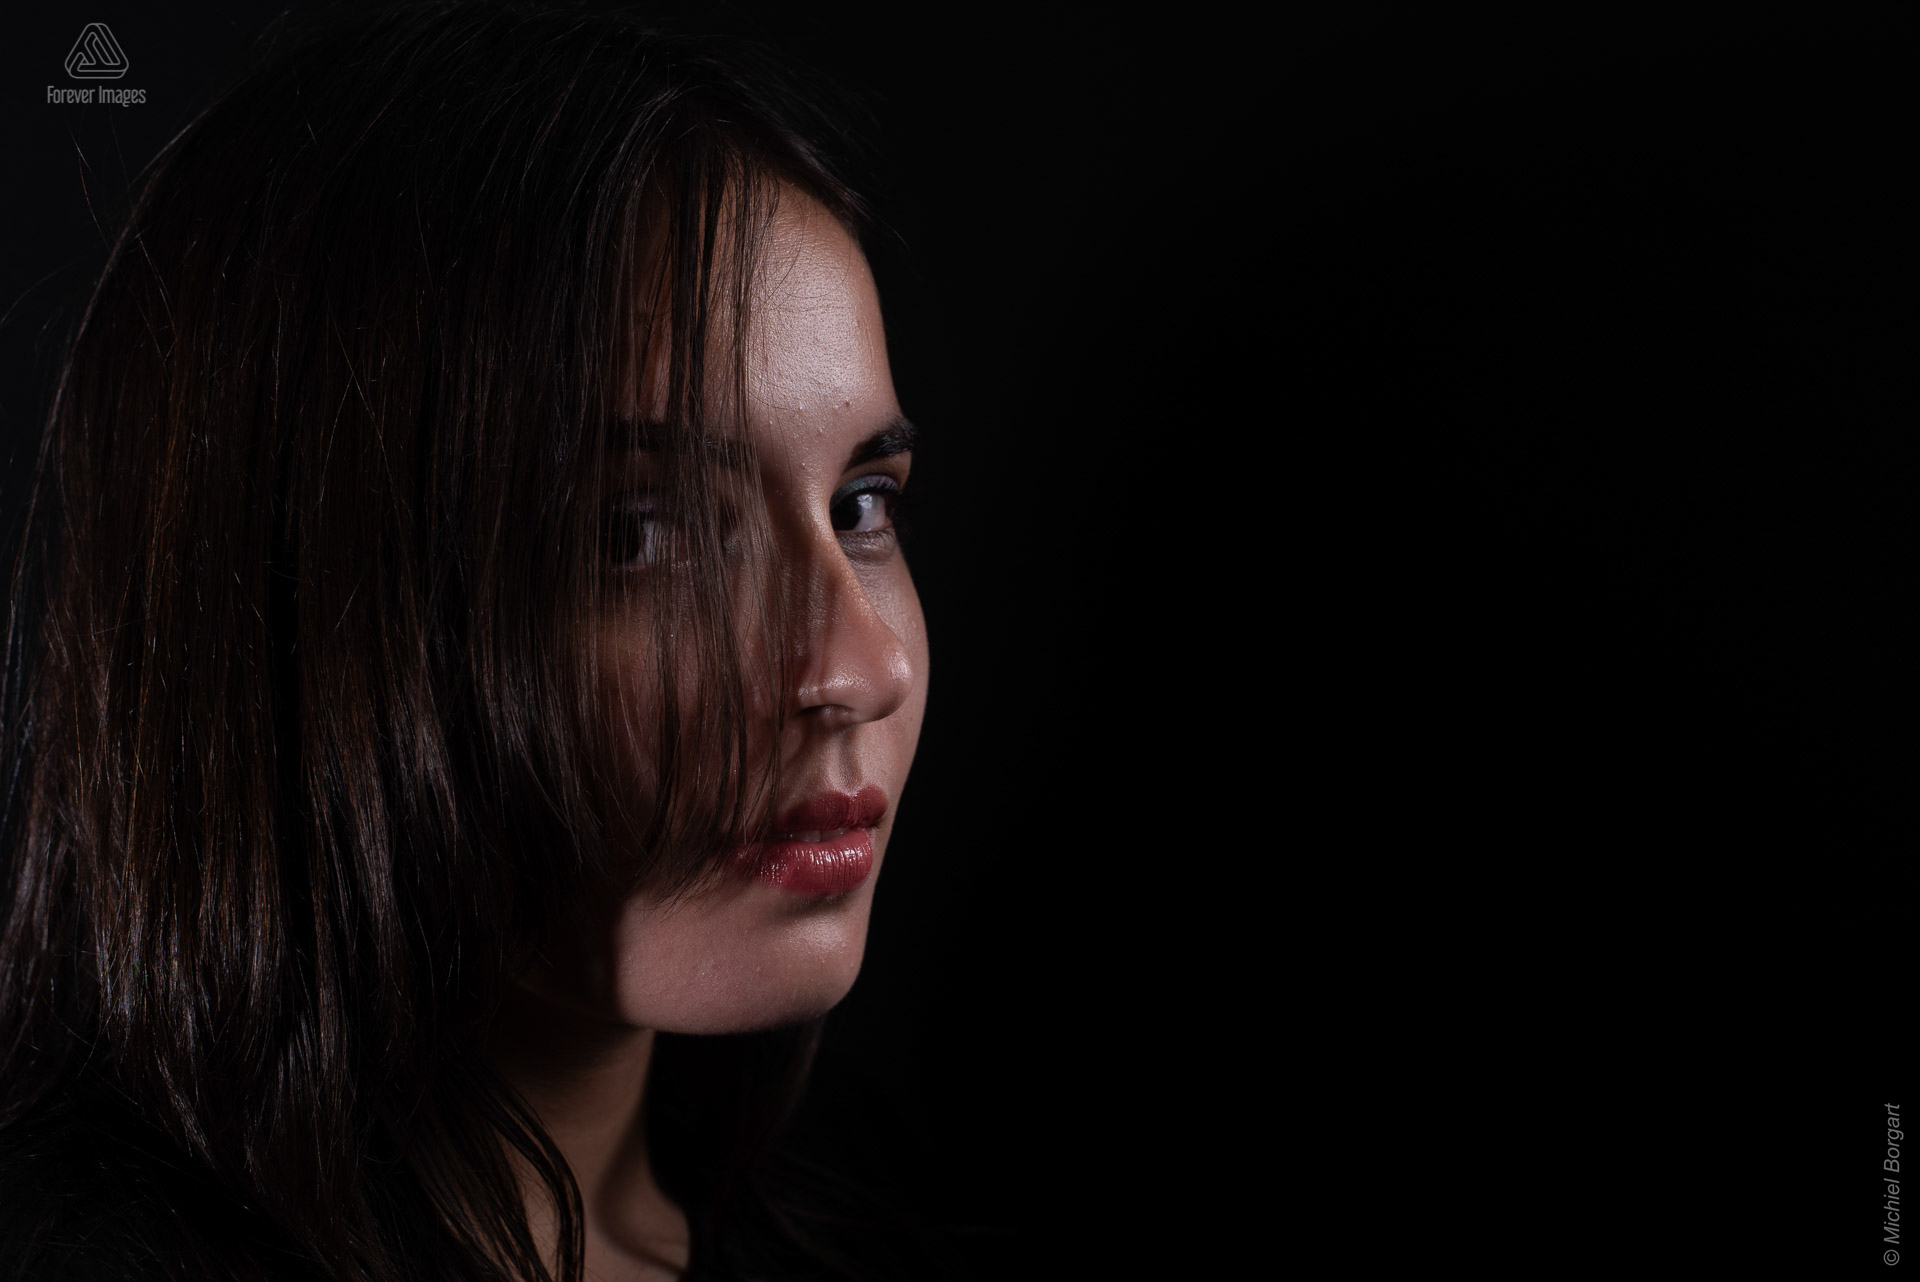 Portretfoto jonge dame kijkt door haar low key | Isis Vaandrager | Portretfotograaf Michiel Borgart - Forever Images.